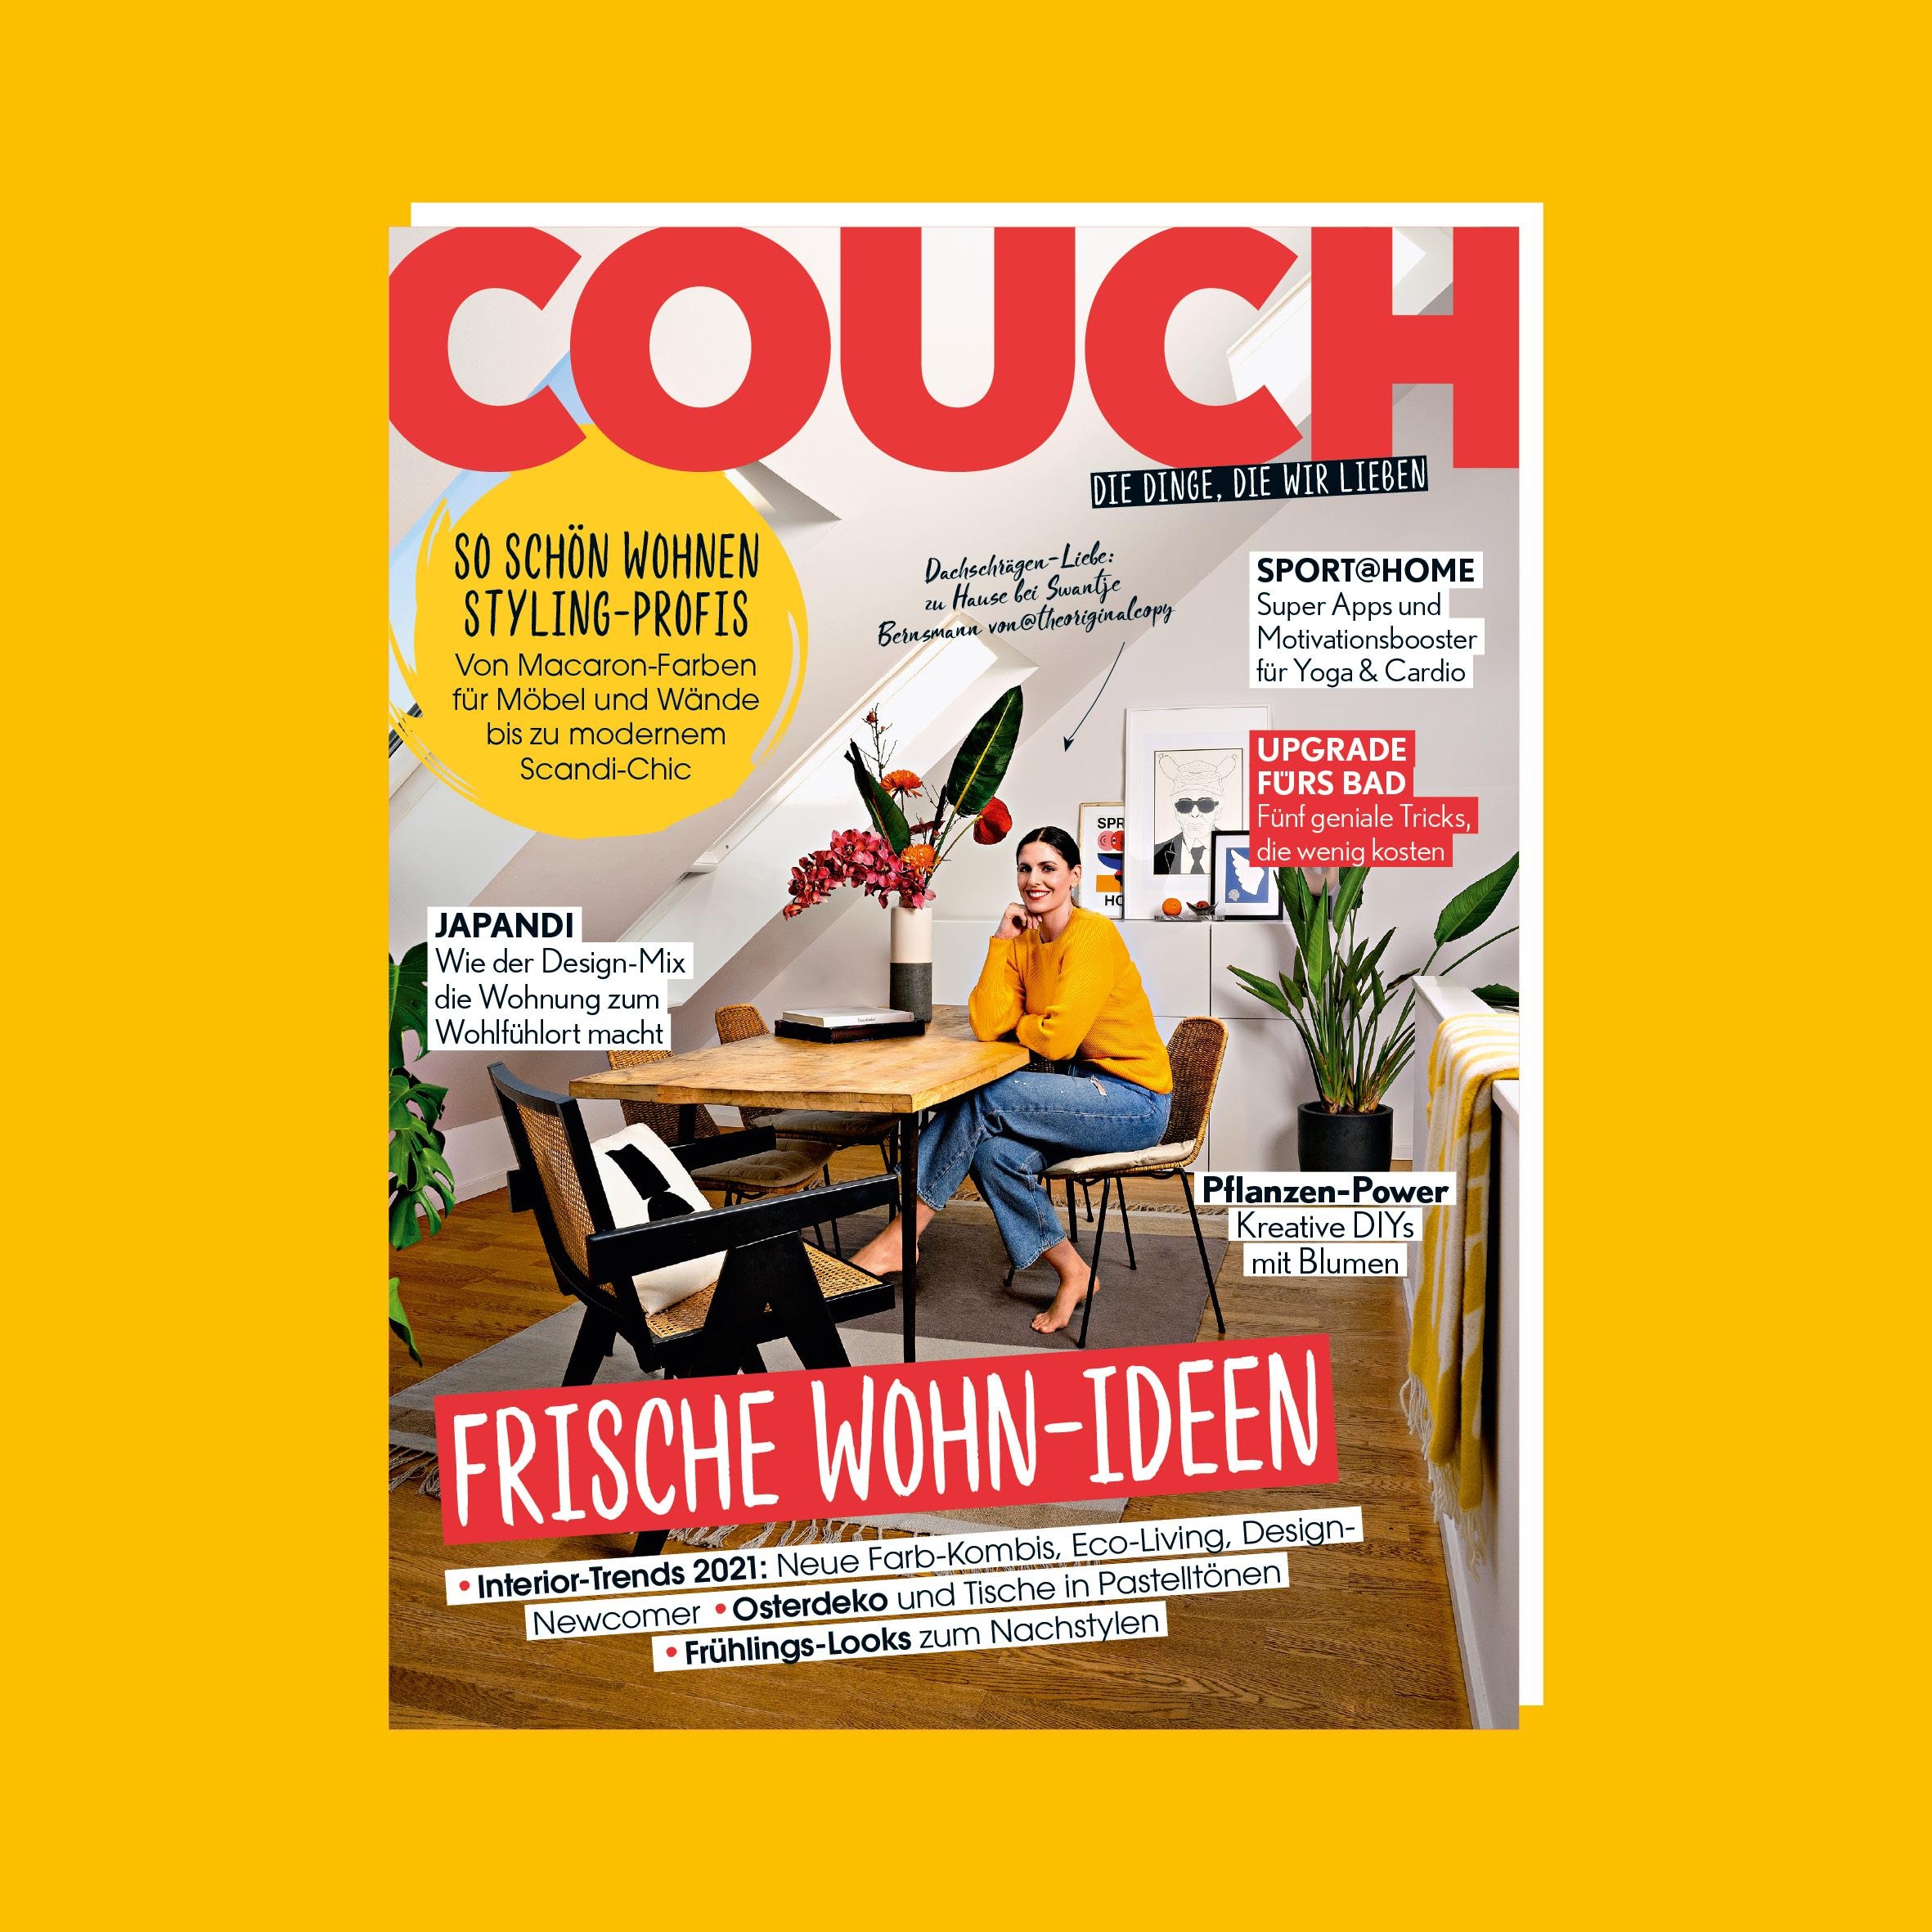 Ab heute gibt es das neue #COUCHMagazin und wir freuen uns mit euch auf frische Wohnideen für den #frühling und #ostern!